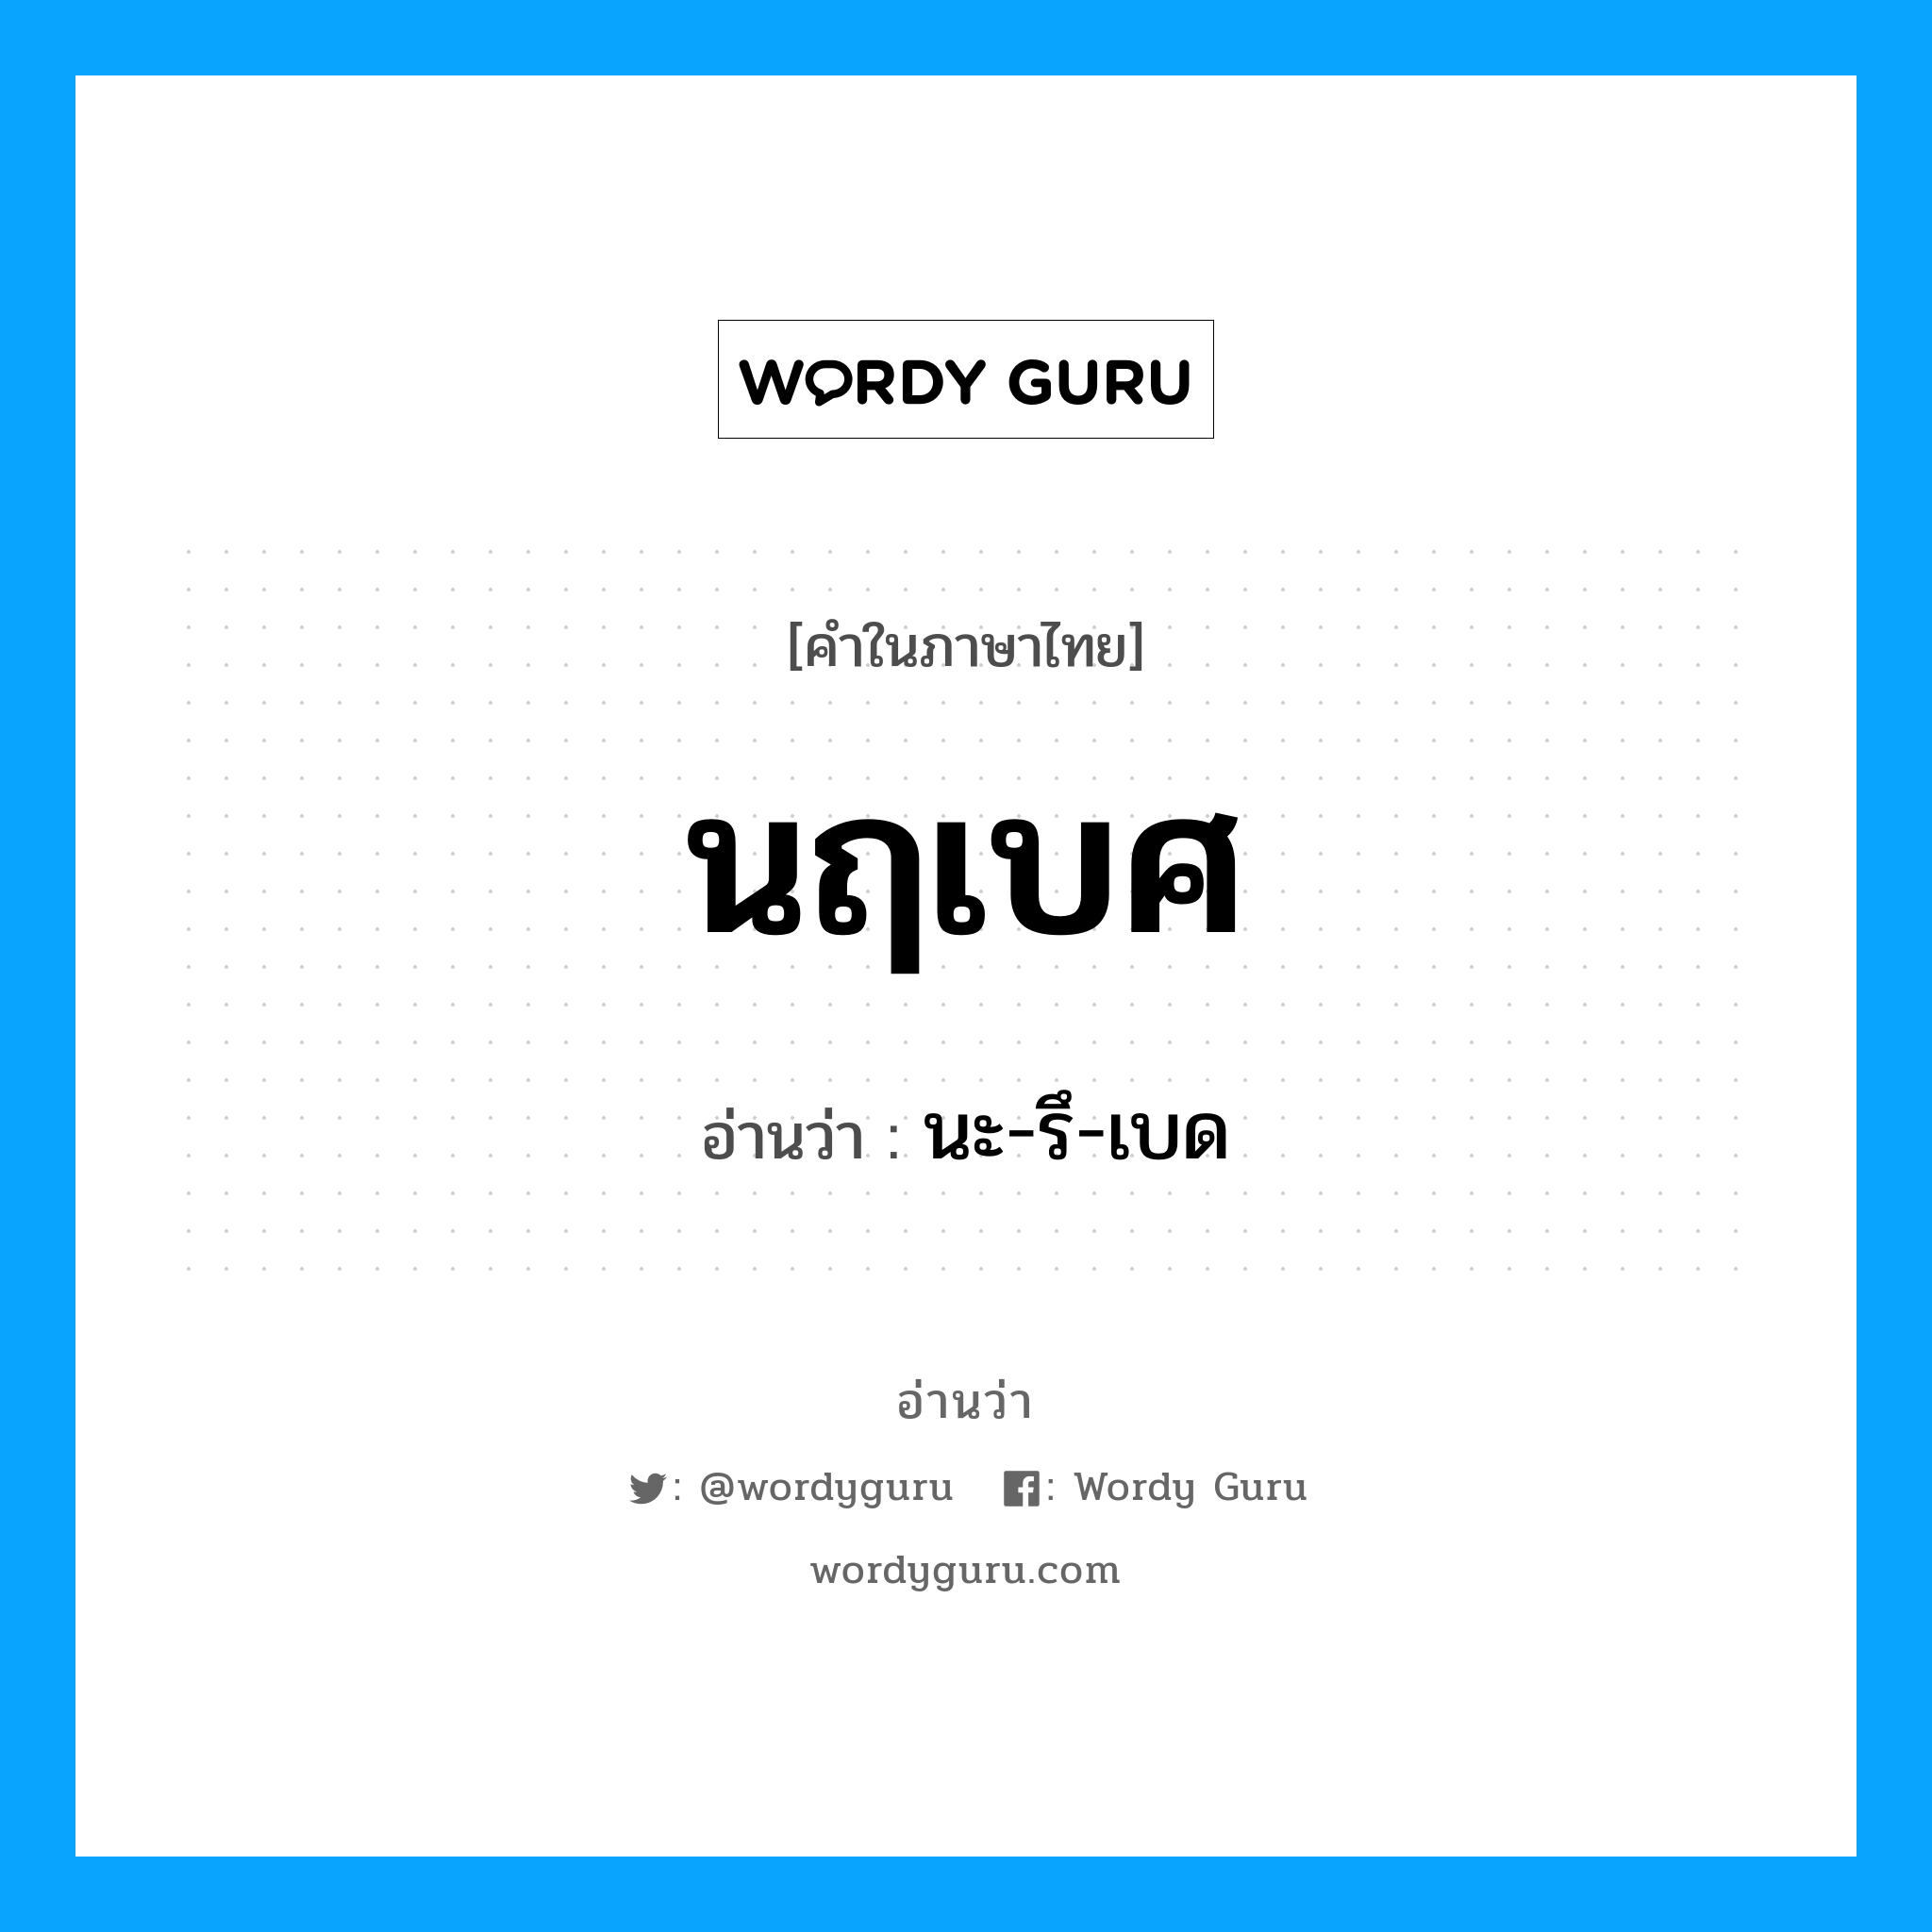 นะ-รึ-เบด เป็นคำอ่านของคำไหน?, คำในภาษาไทย นะ-รึ-เบด อ่านว่า นฤเบศ